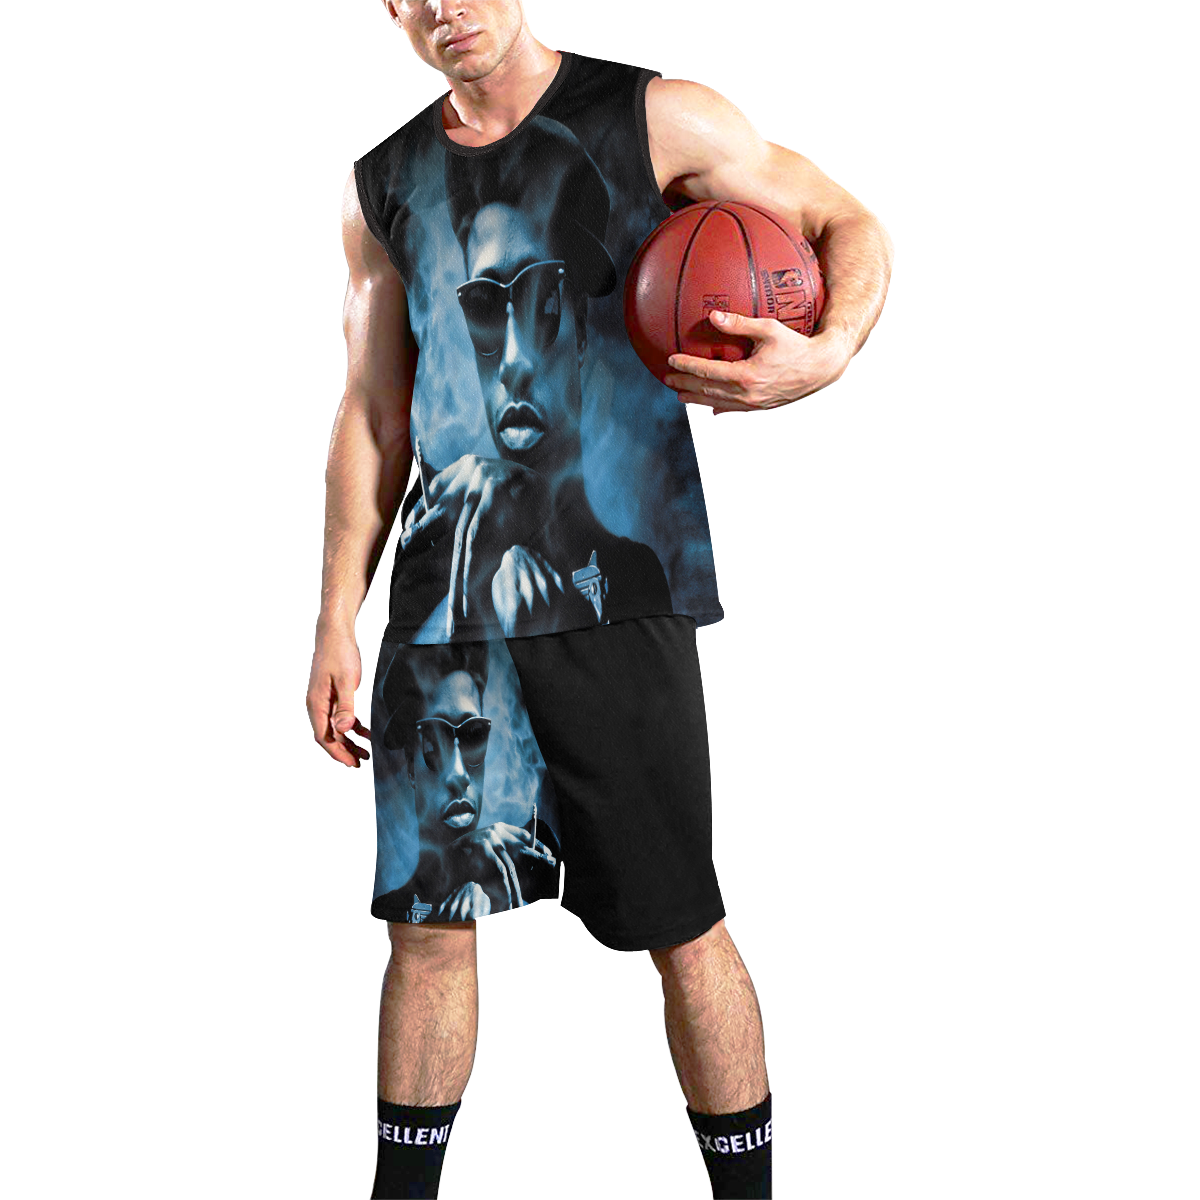 NINO BROWN All Over Print Basketball Uniform